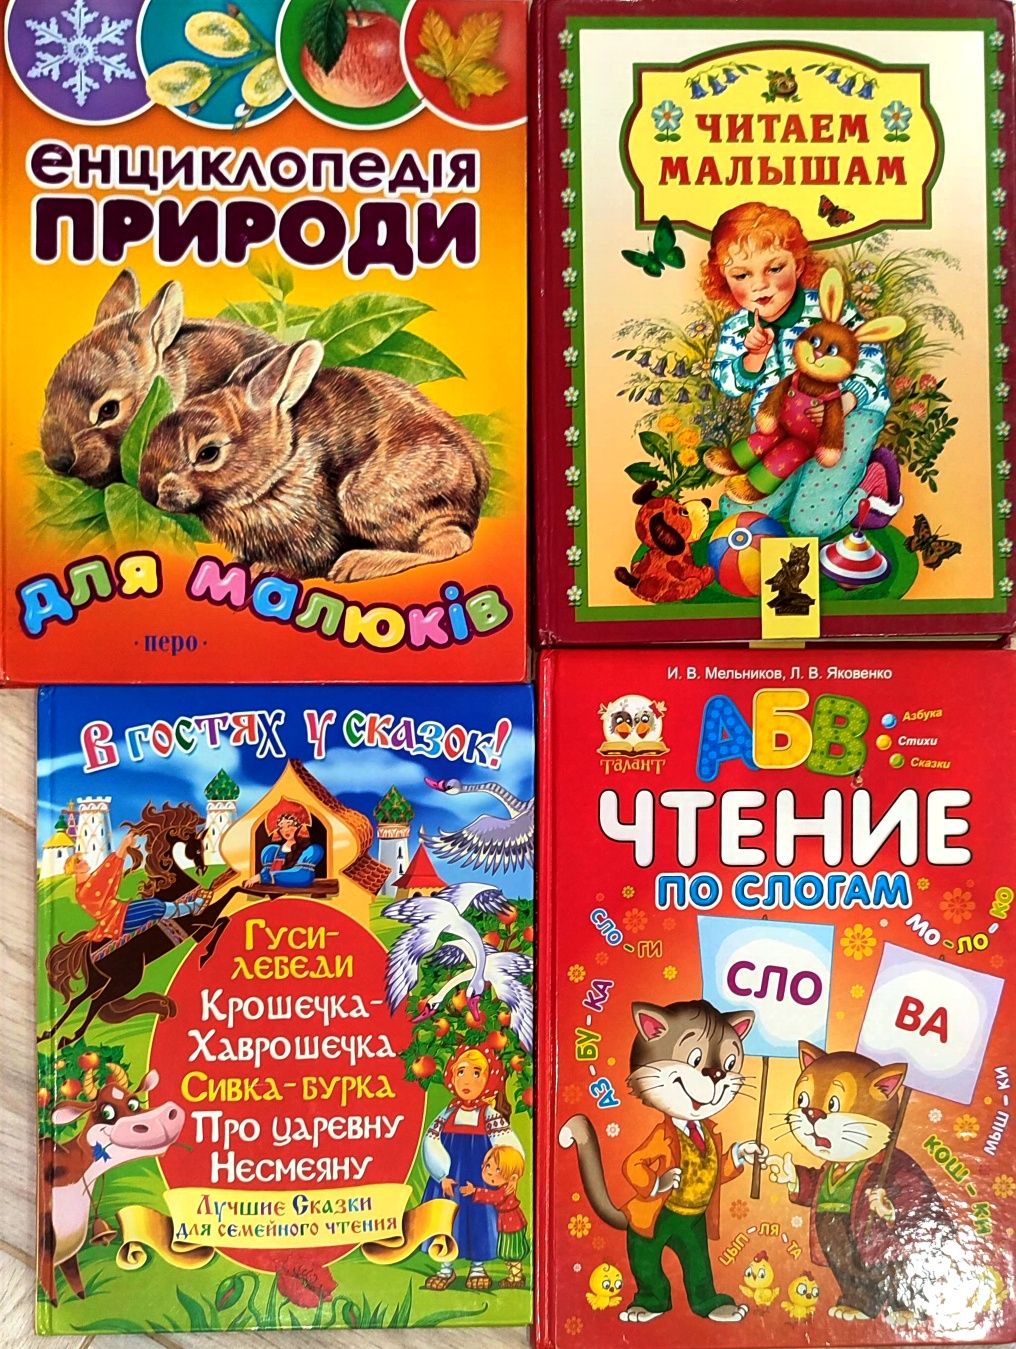 Детские книжки от 60 грн, книги для детей